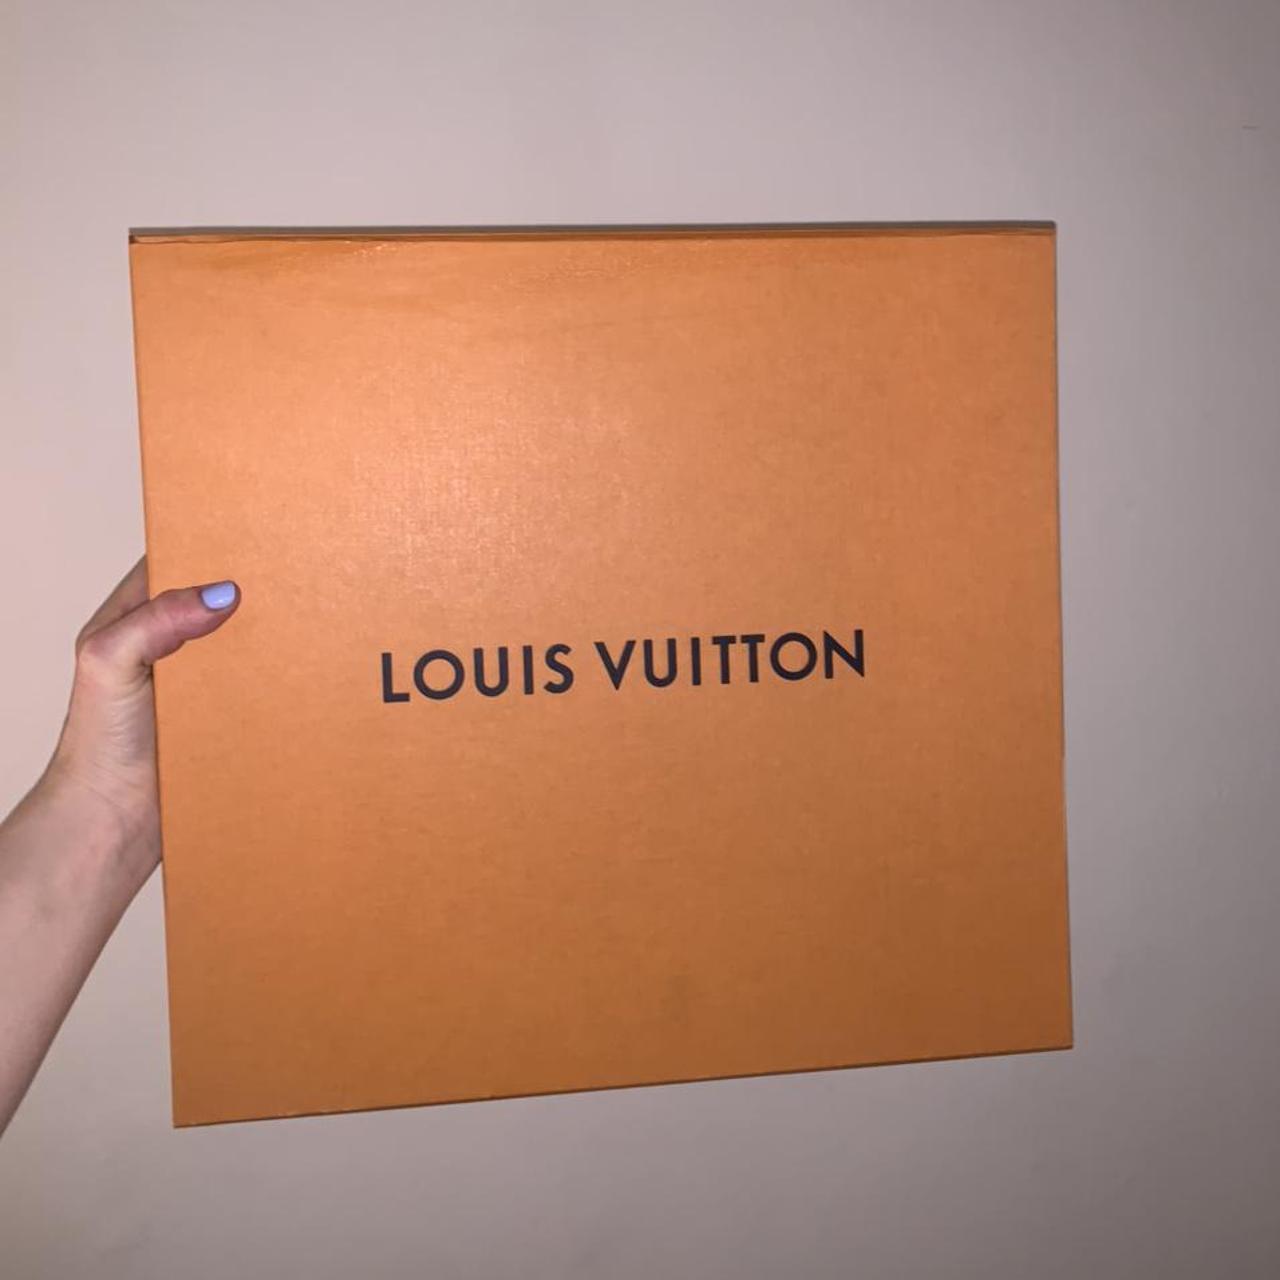 Authentic Louis Vuitton box. Dimensions are: 5.75” - Depop